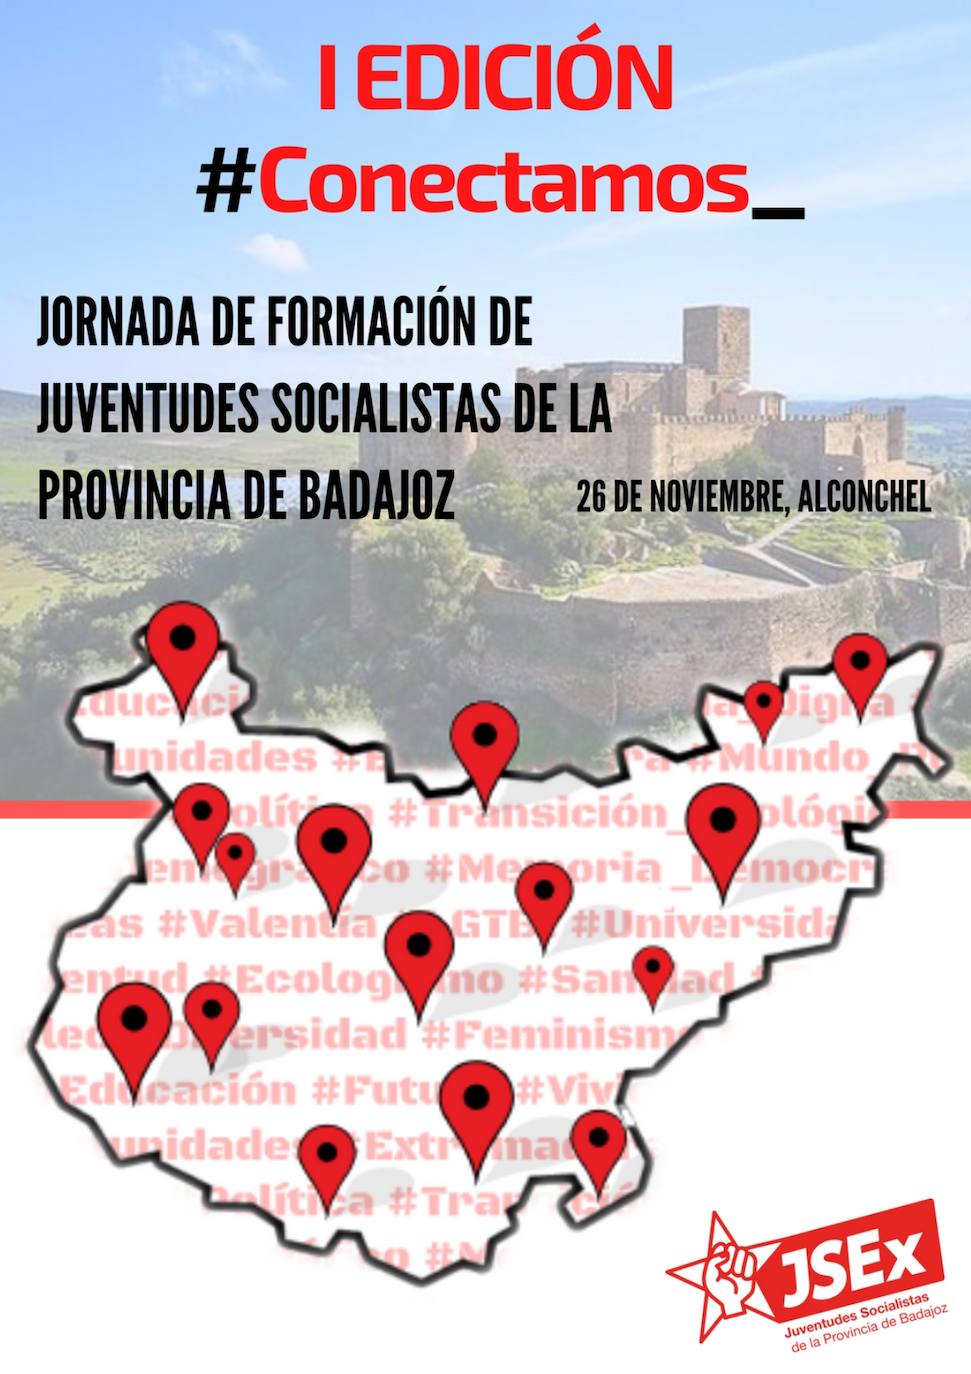 Alconchel acoge una jornada formativa de jóvenes socialistas de la provincia de Badajoz